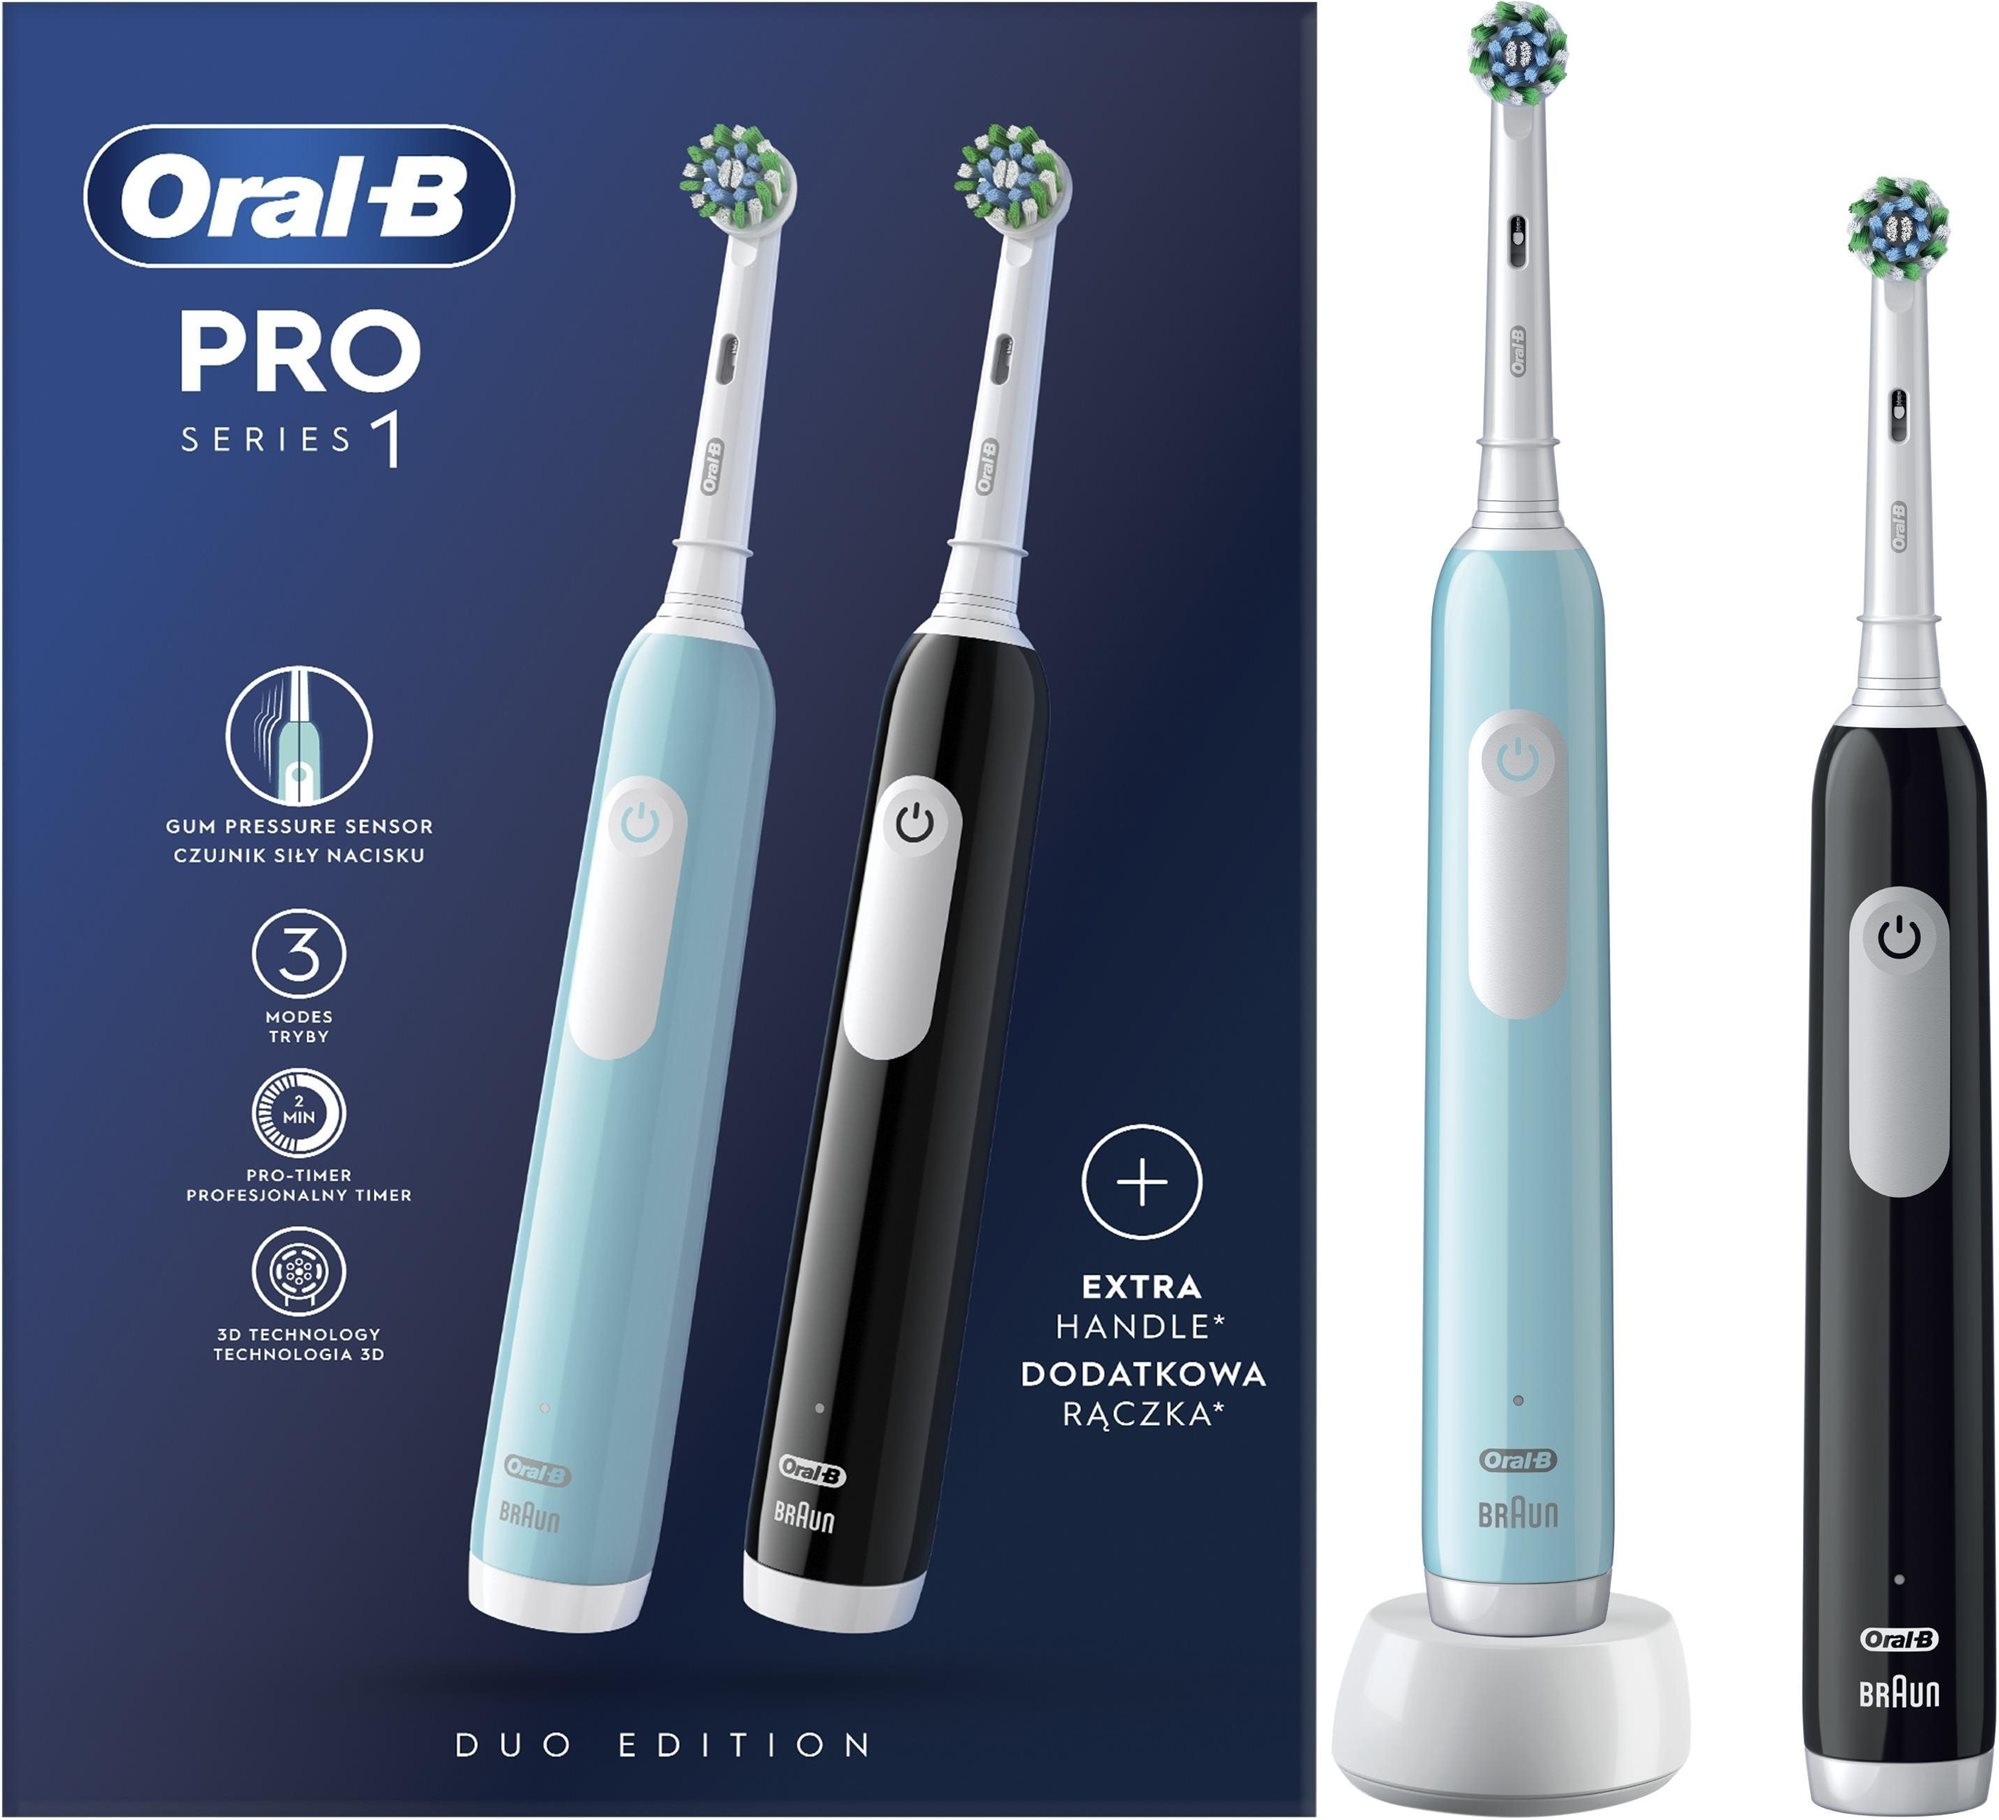 Oral-B Pro Series 1 kék és fekete, Braun dizájn